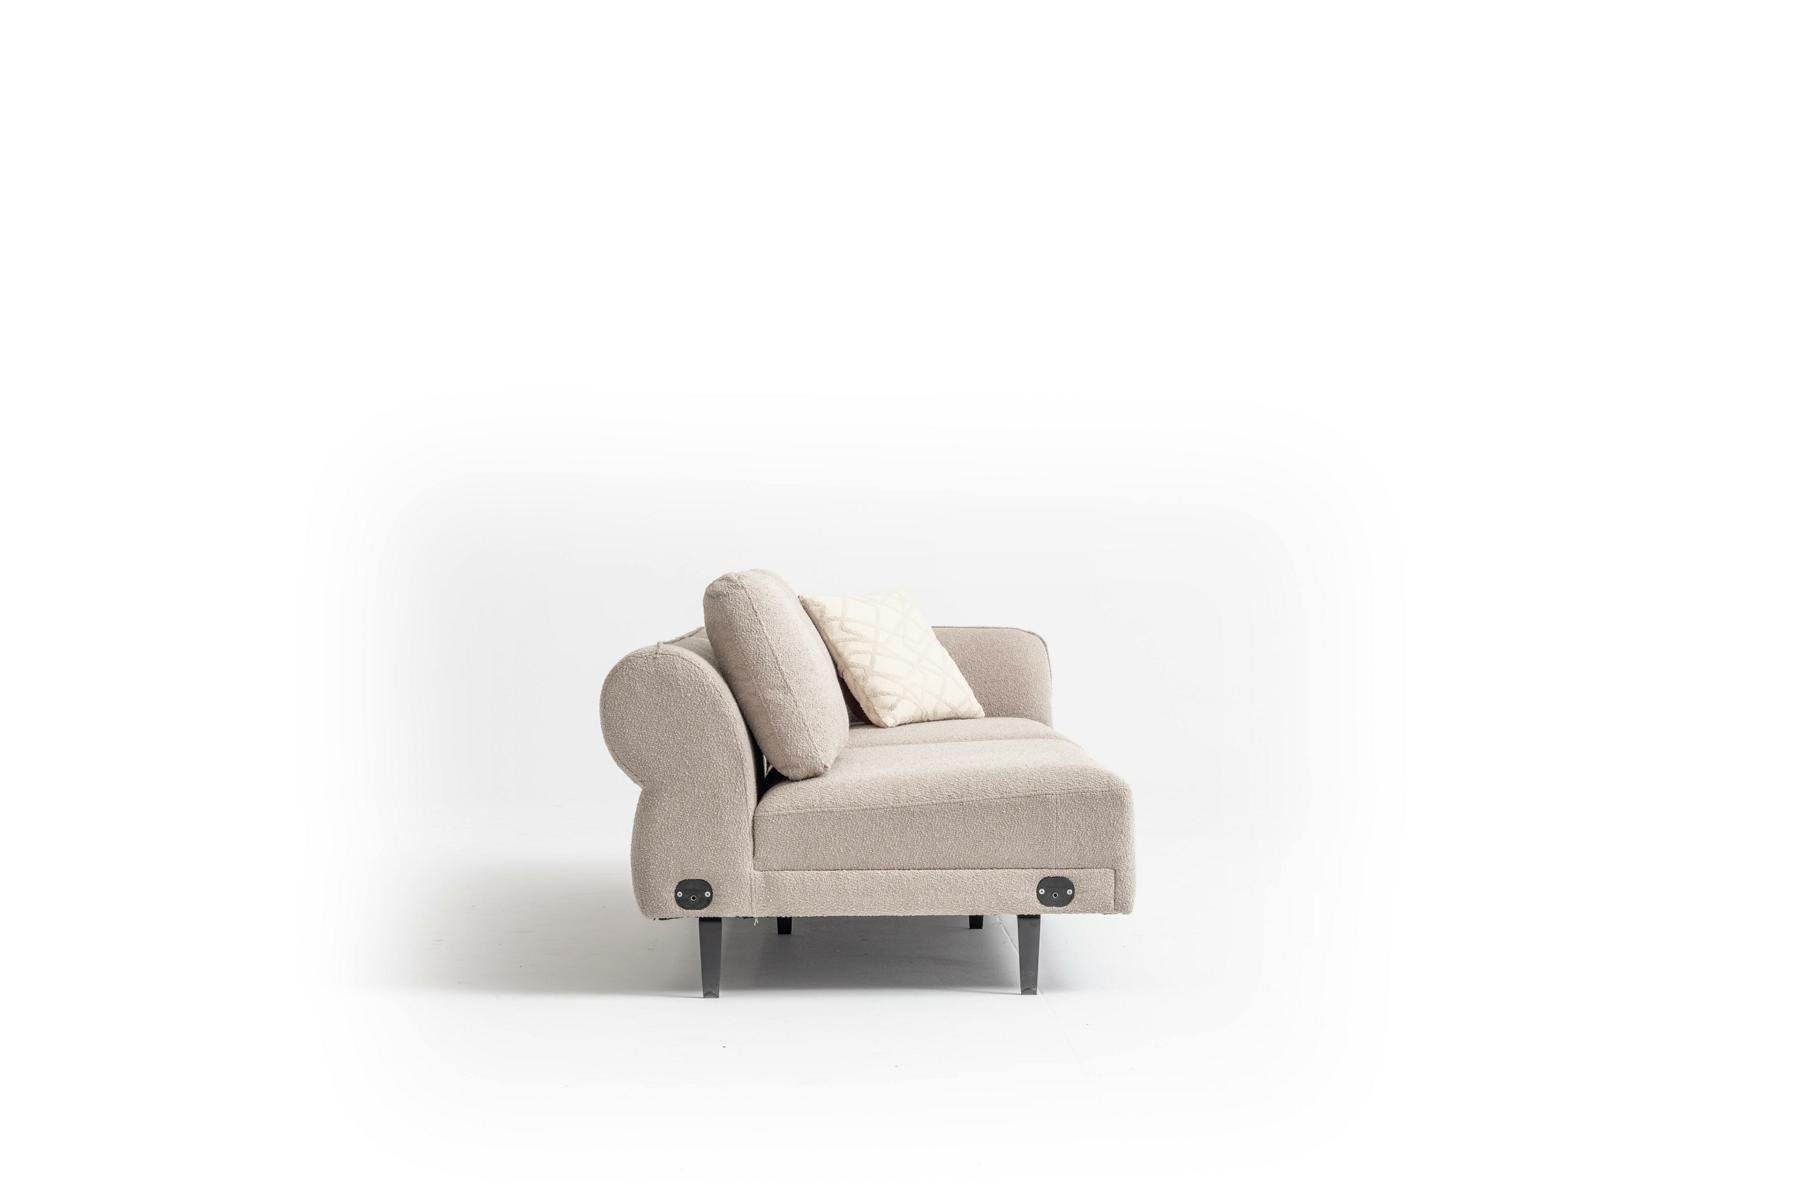 JVmoebel Ecksofa Wohnzimmer Made Europe Sofa L in Polstersofa Eckgarnitur 312x312, Beige Form Couch